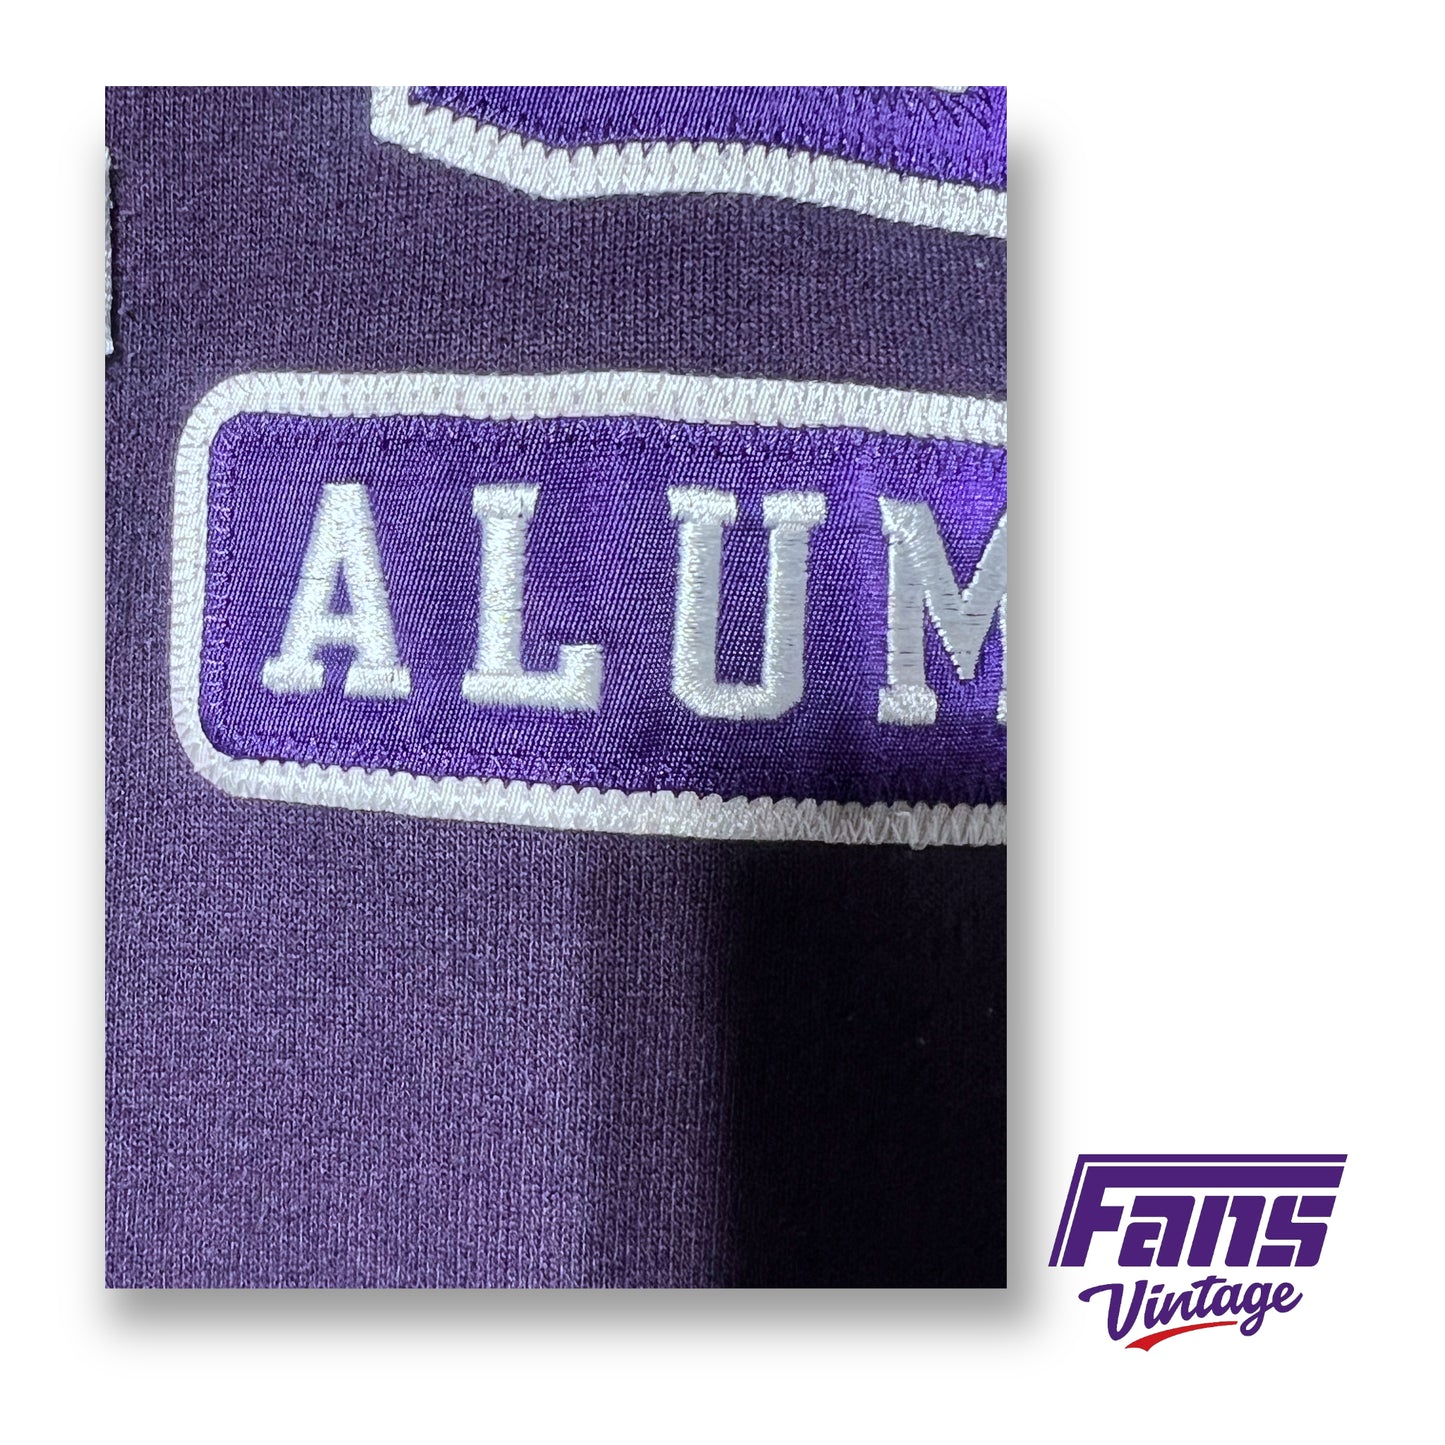 90s Vintage TCU Alumni Crewneck Sweater - Beautiful Purple Satin logo patches!